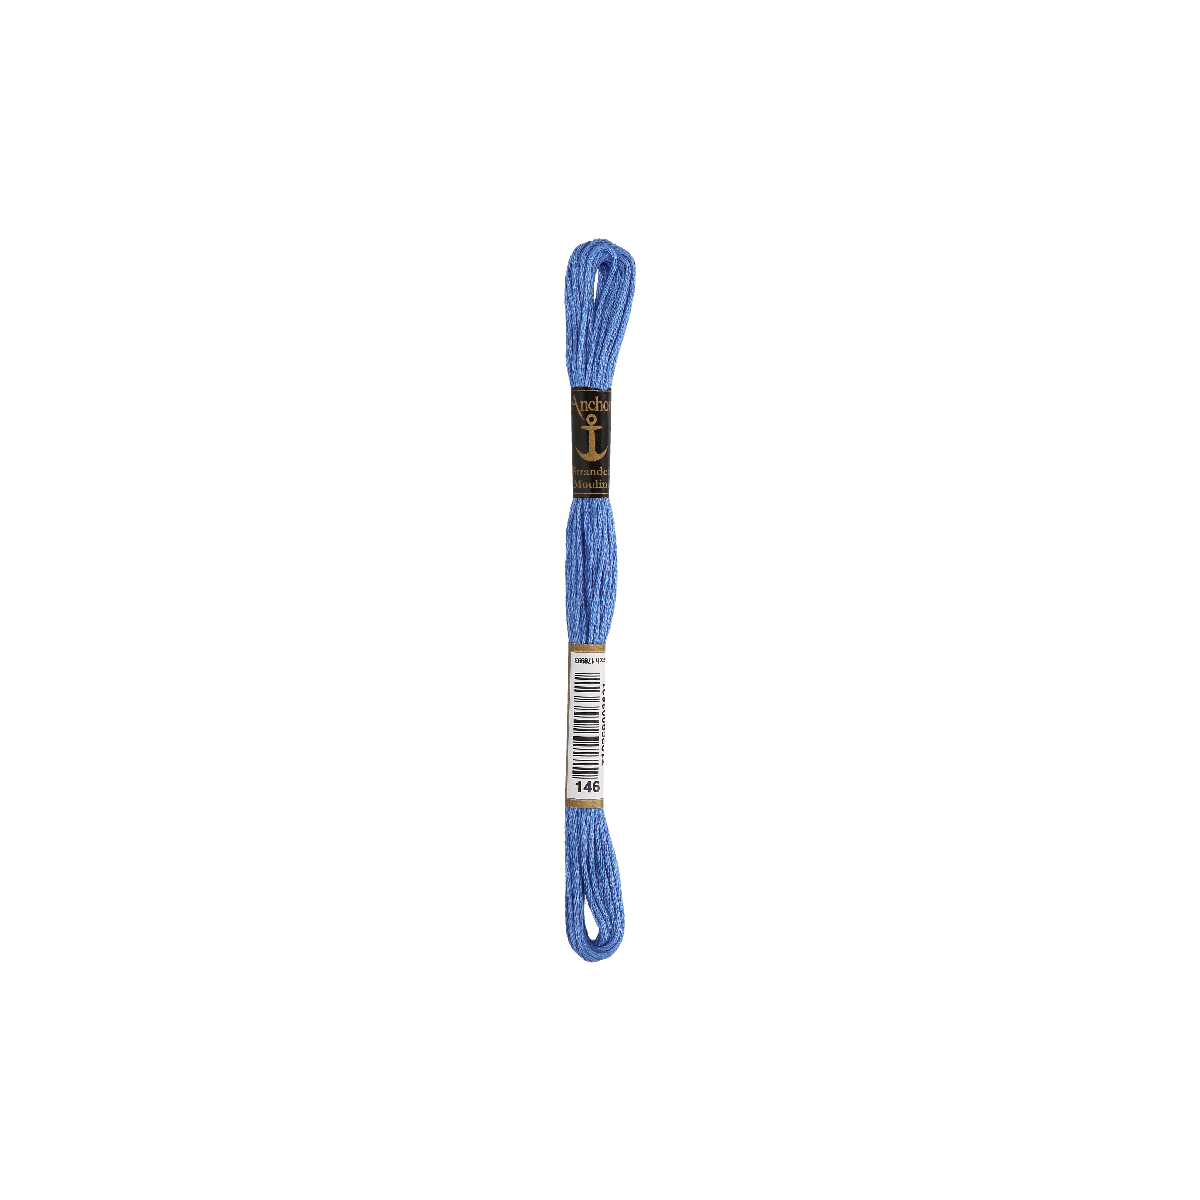 Anchor Sticktwist 8m, blau, Baumwolle, Farbe 146,...